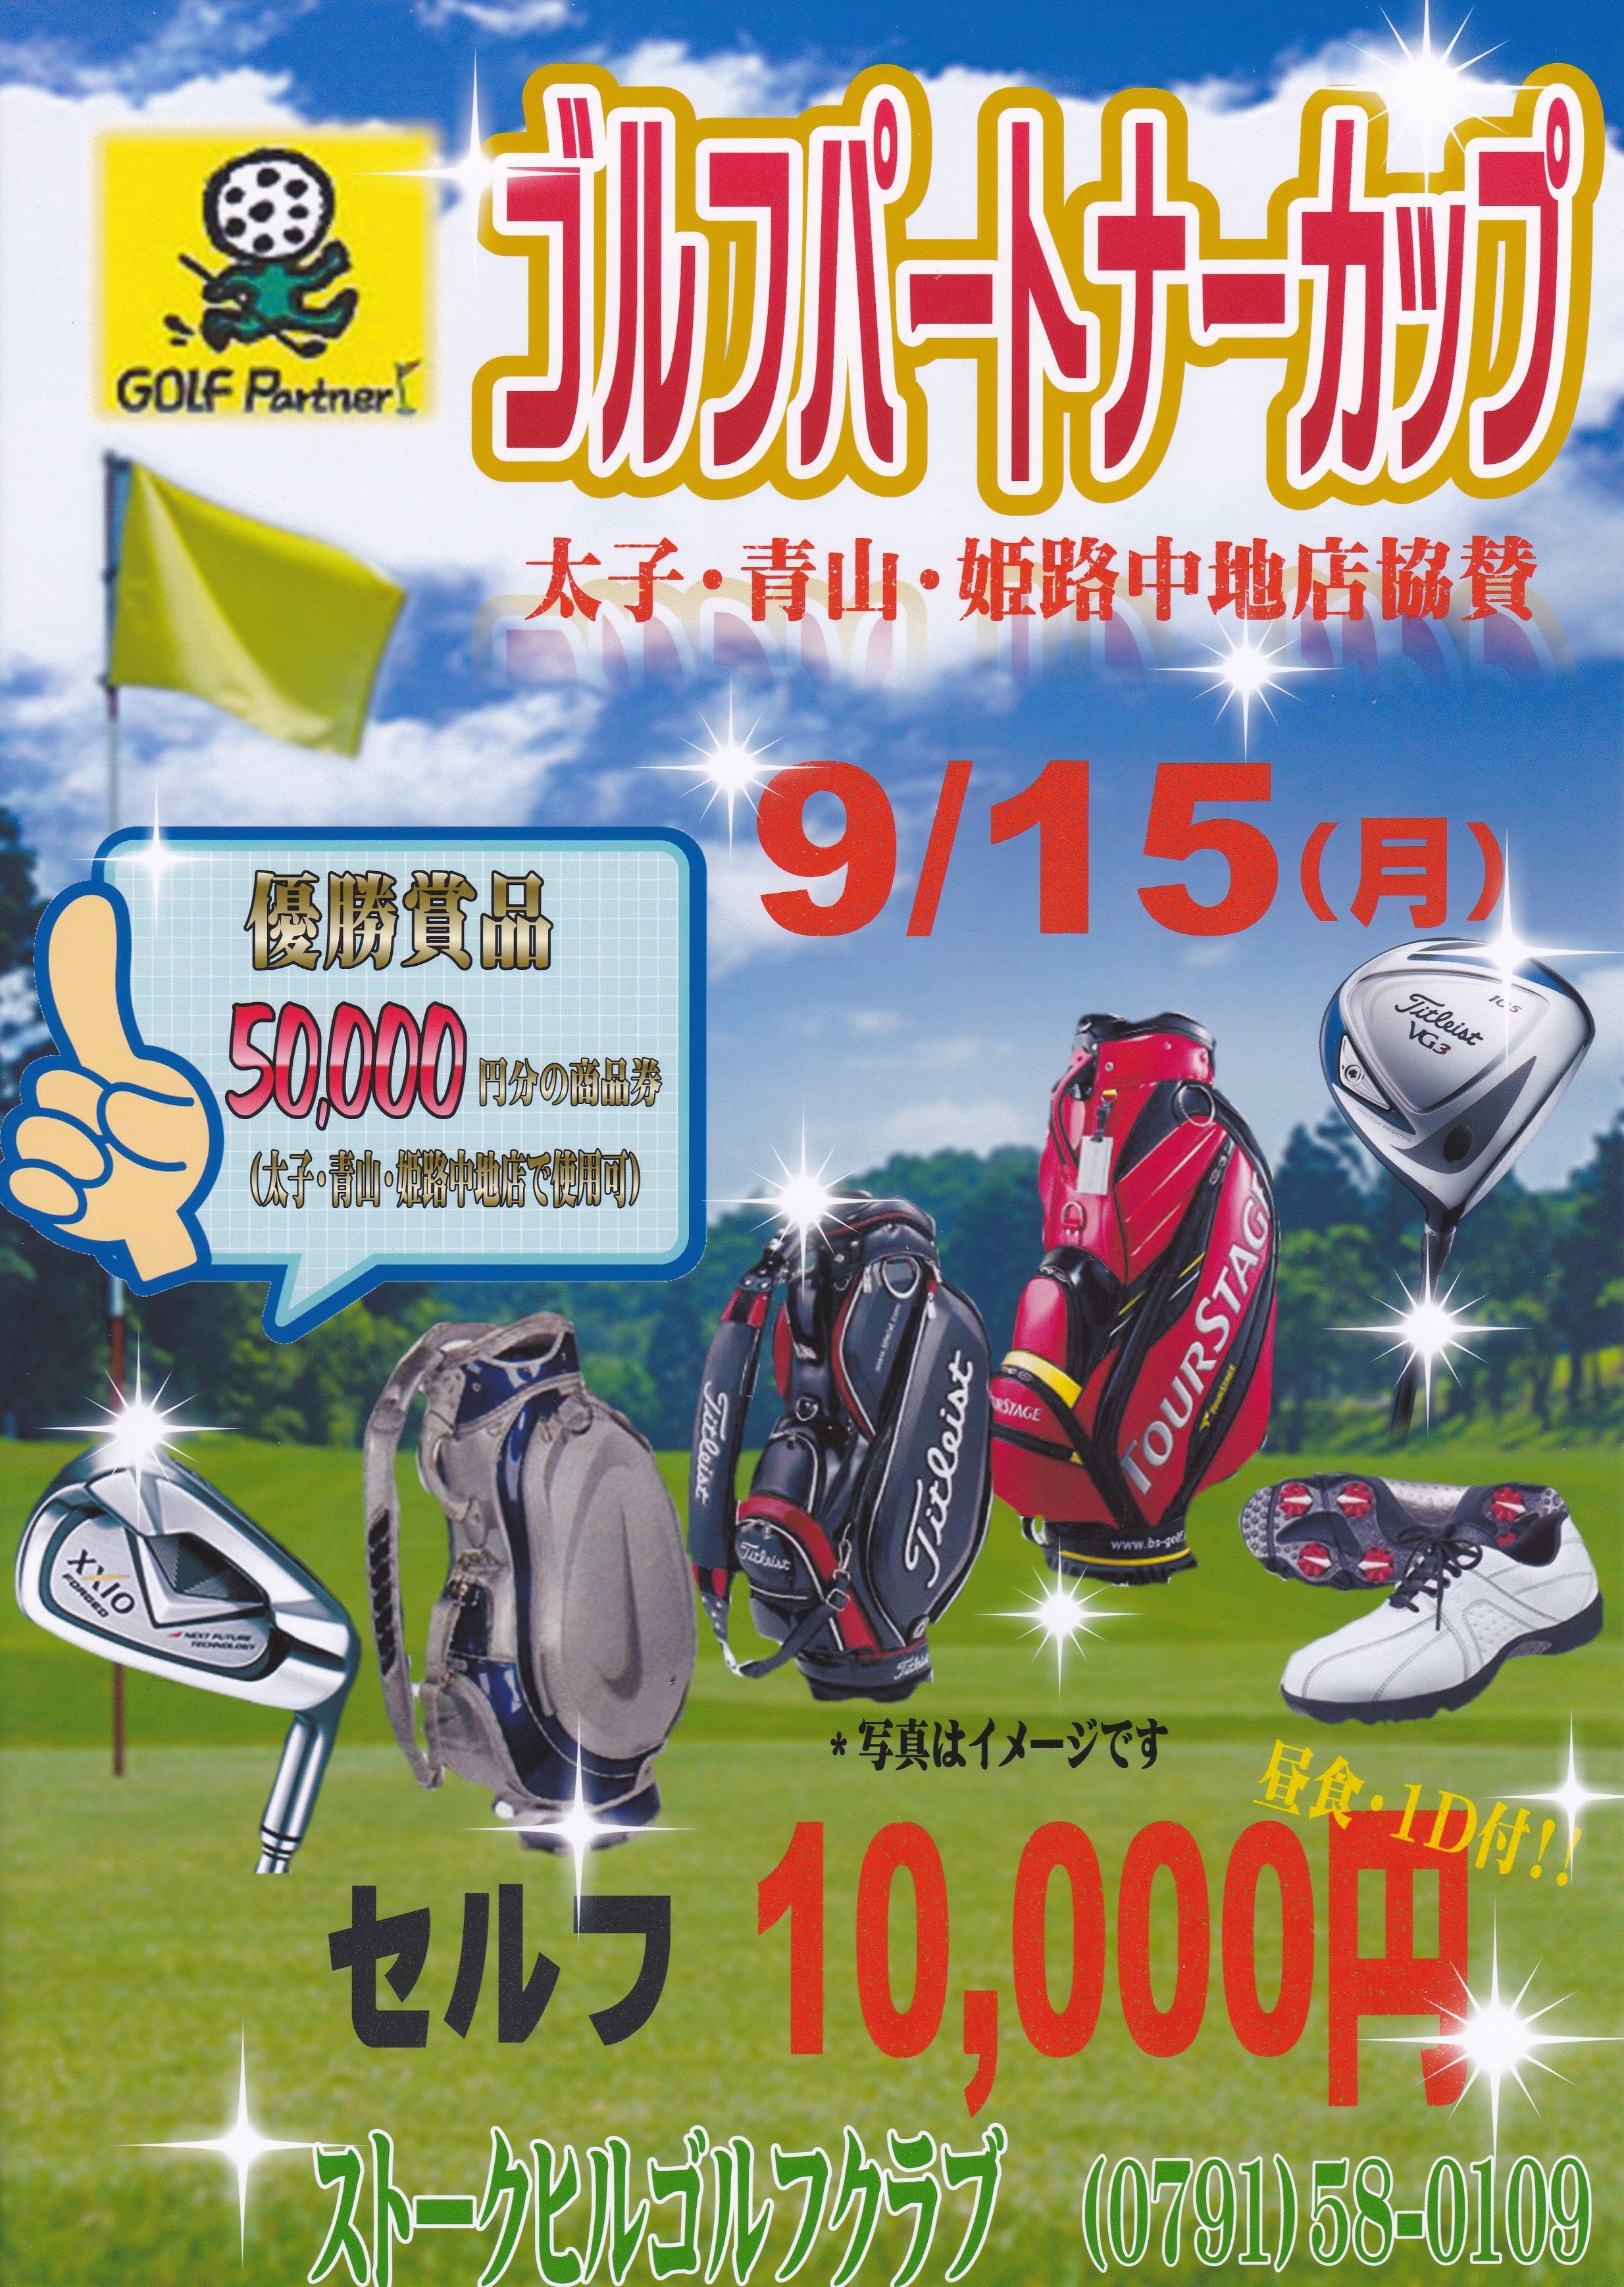 http://www.golfpartner.co.jp/449/%E3%82%B4%E3%83%AB%E3%83%91%E3%82%AB%E3%83%83%E3%83%97.jpg